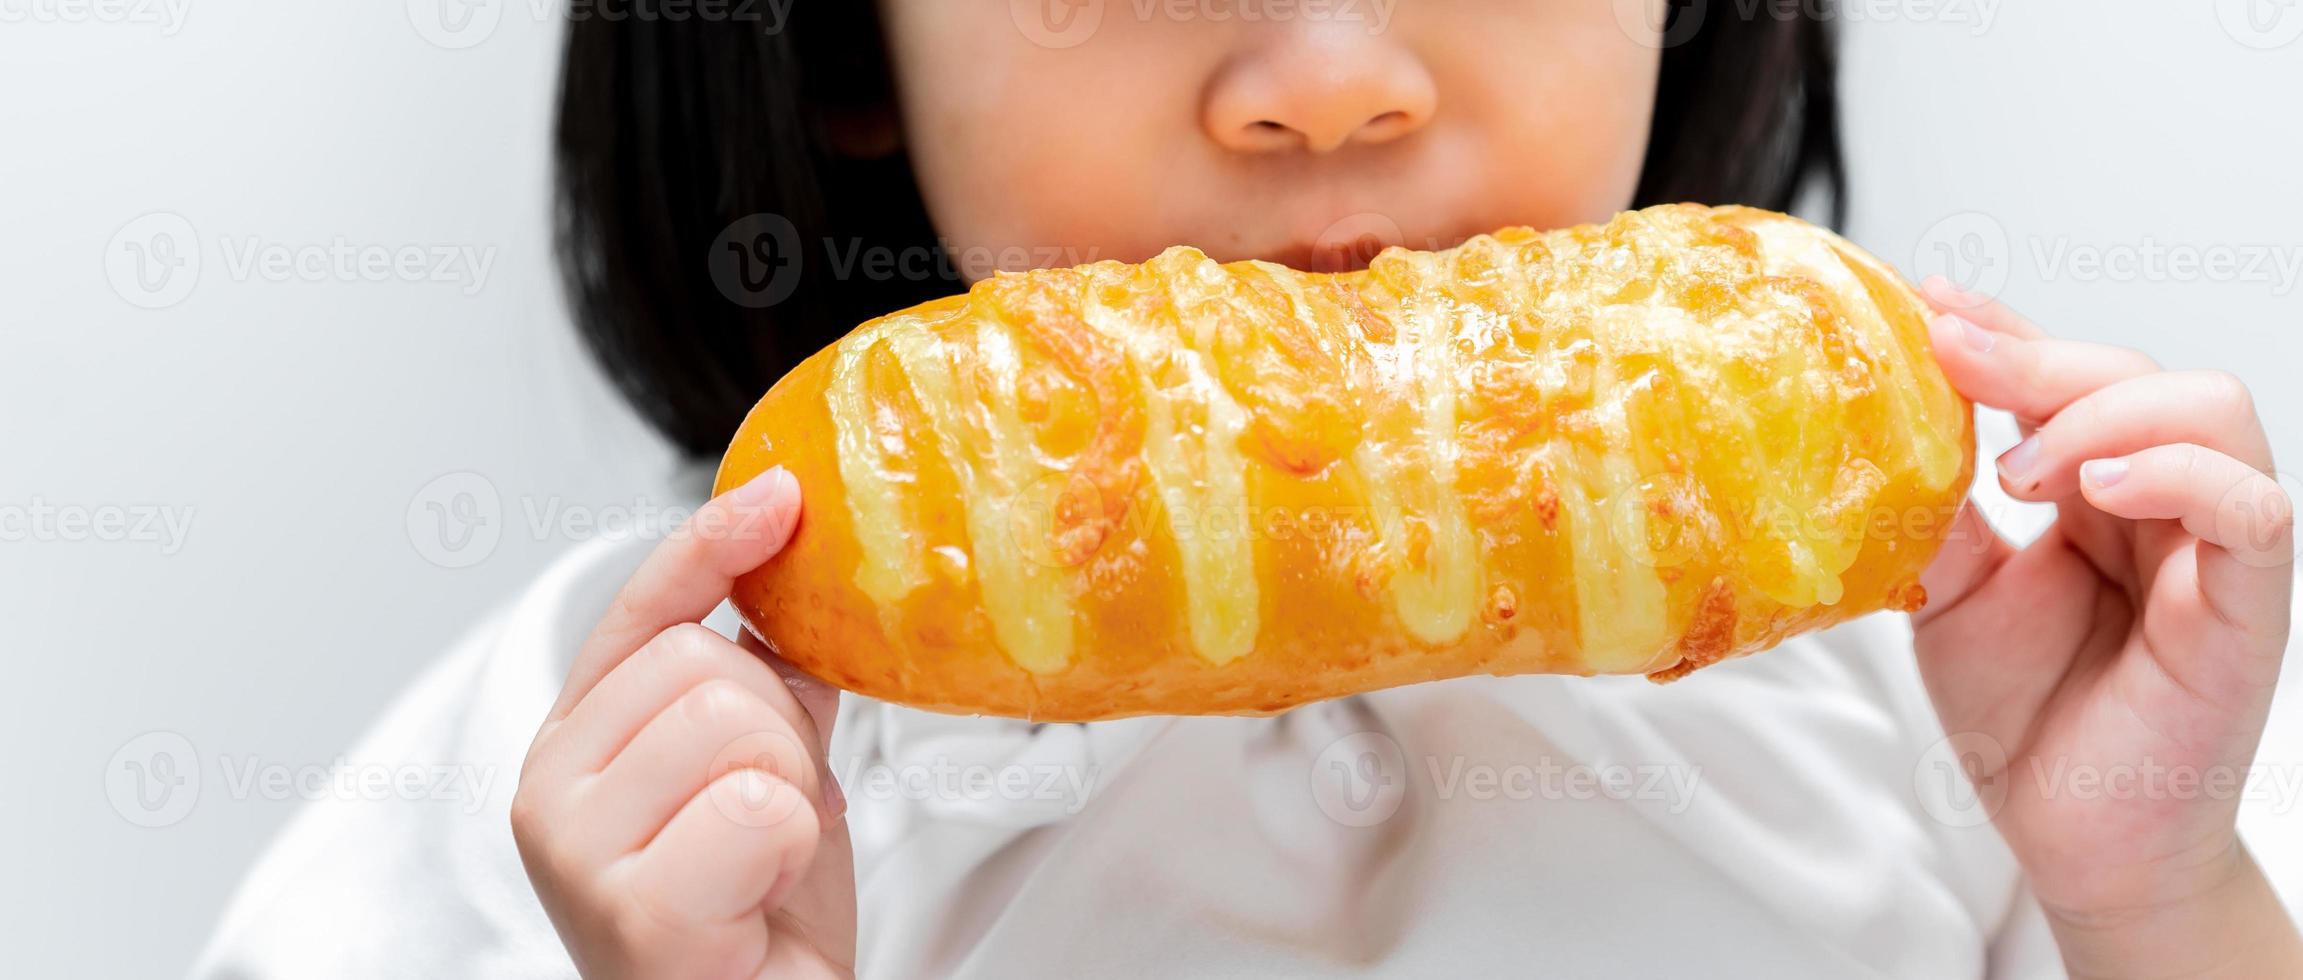 Aziatisch meisje dat zoete toost eet. gelukkig kind met mooi lang broodje in haar handen. foto